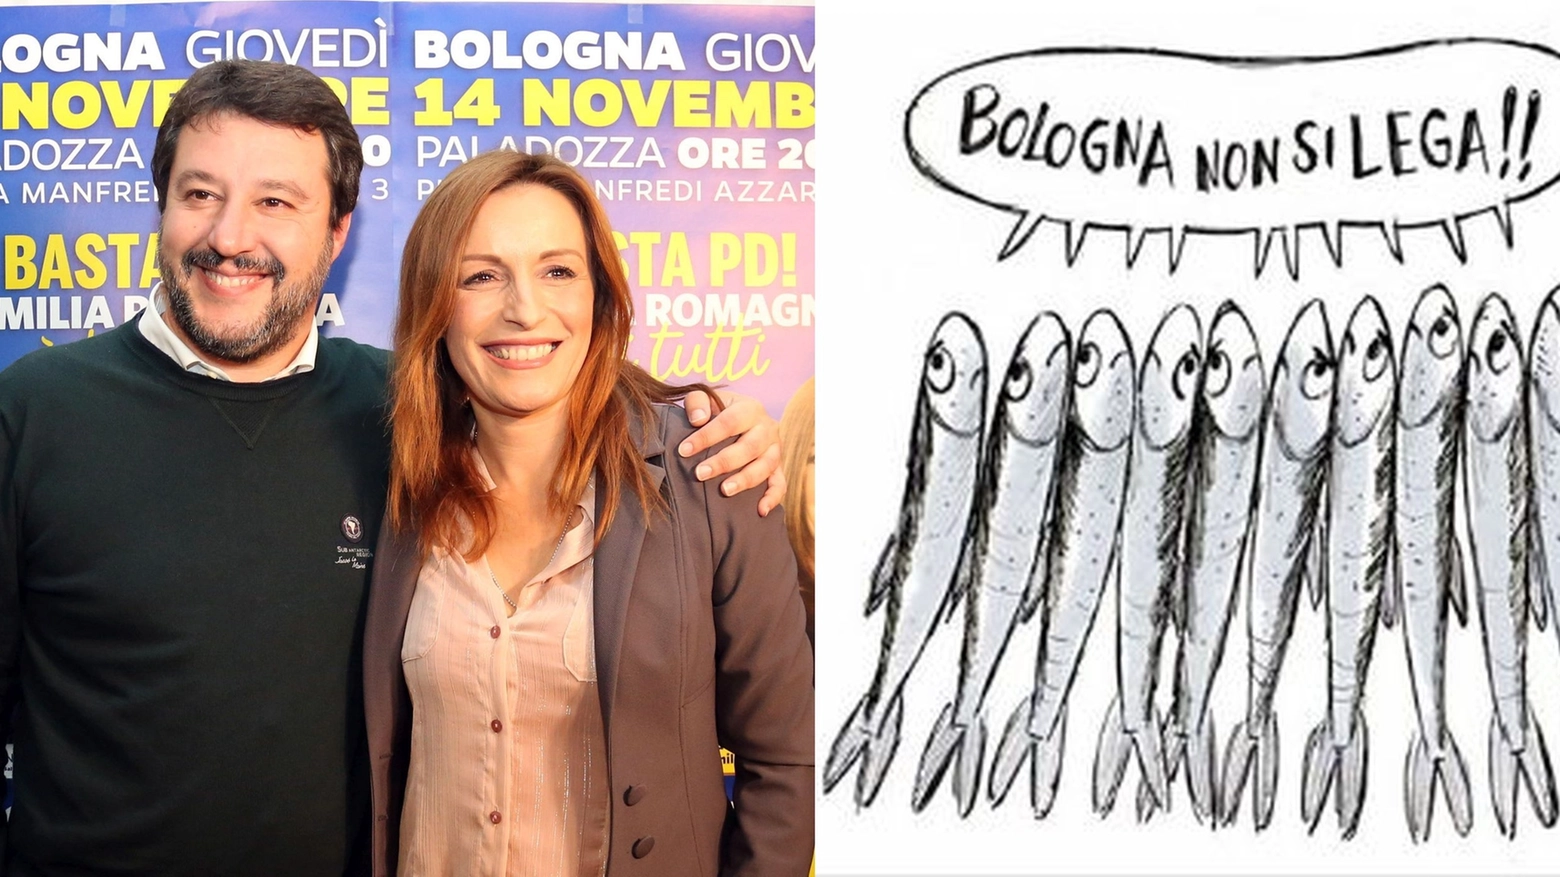 Salvini sarà a Bologna giovedì, flash mob delle 'sardine' sul Crescentone